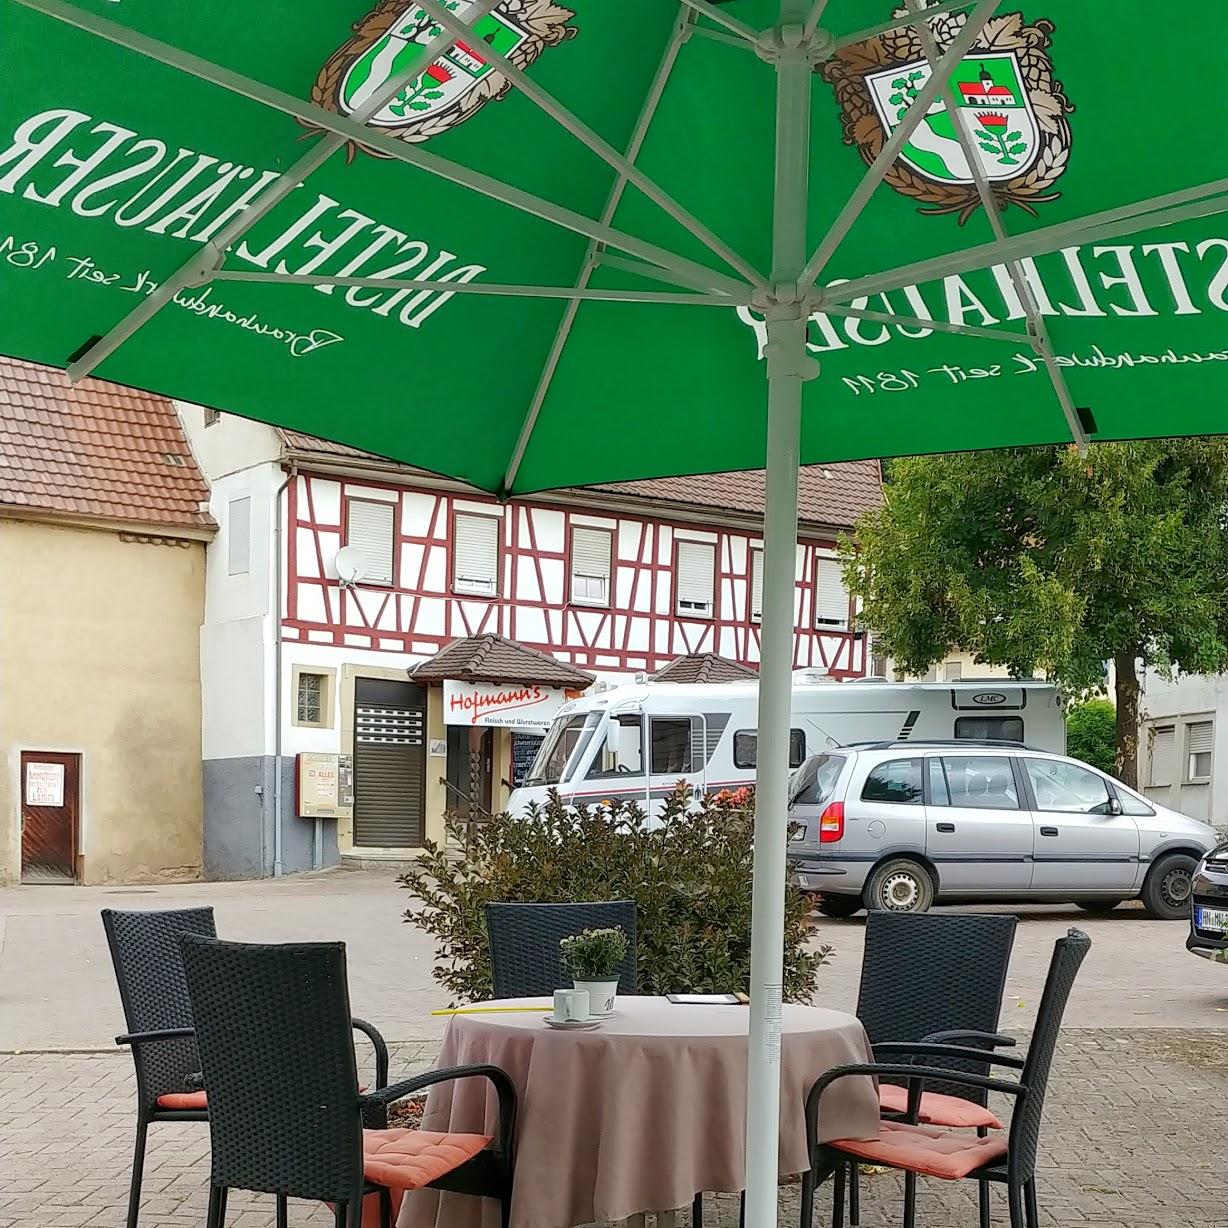 Restaurant "Reinert Café Bäckerei" in  Widdern